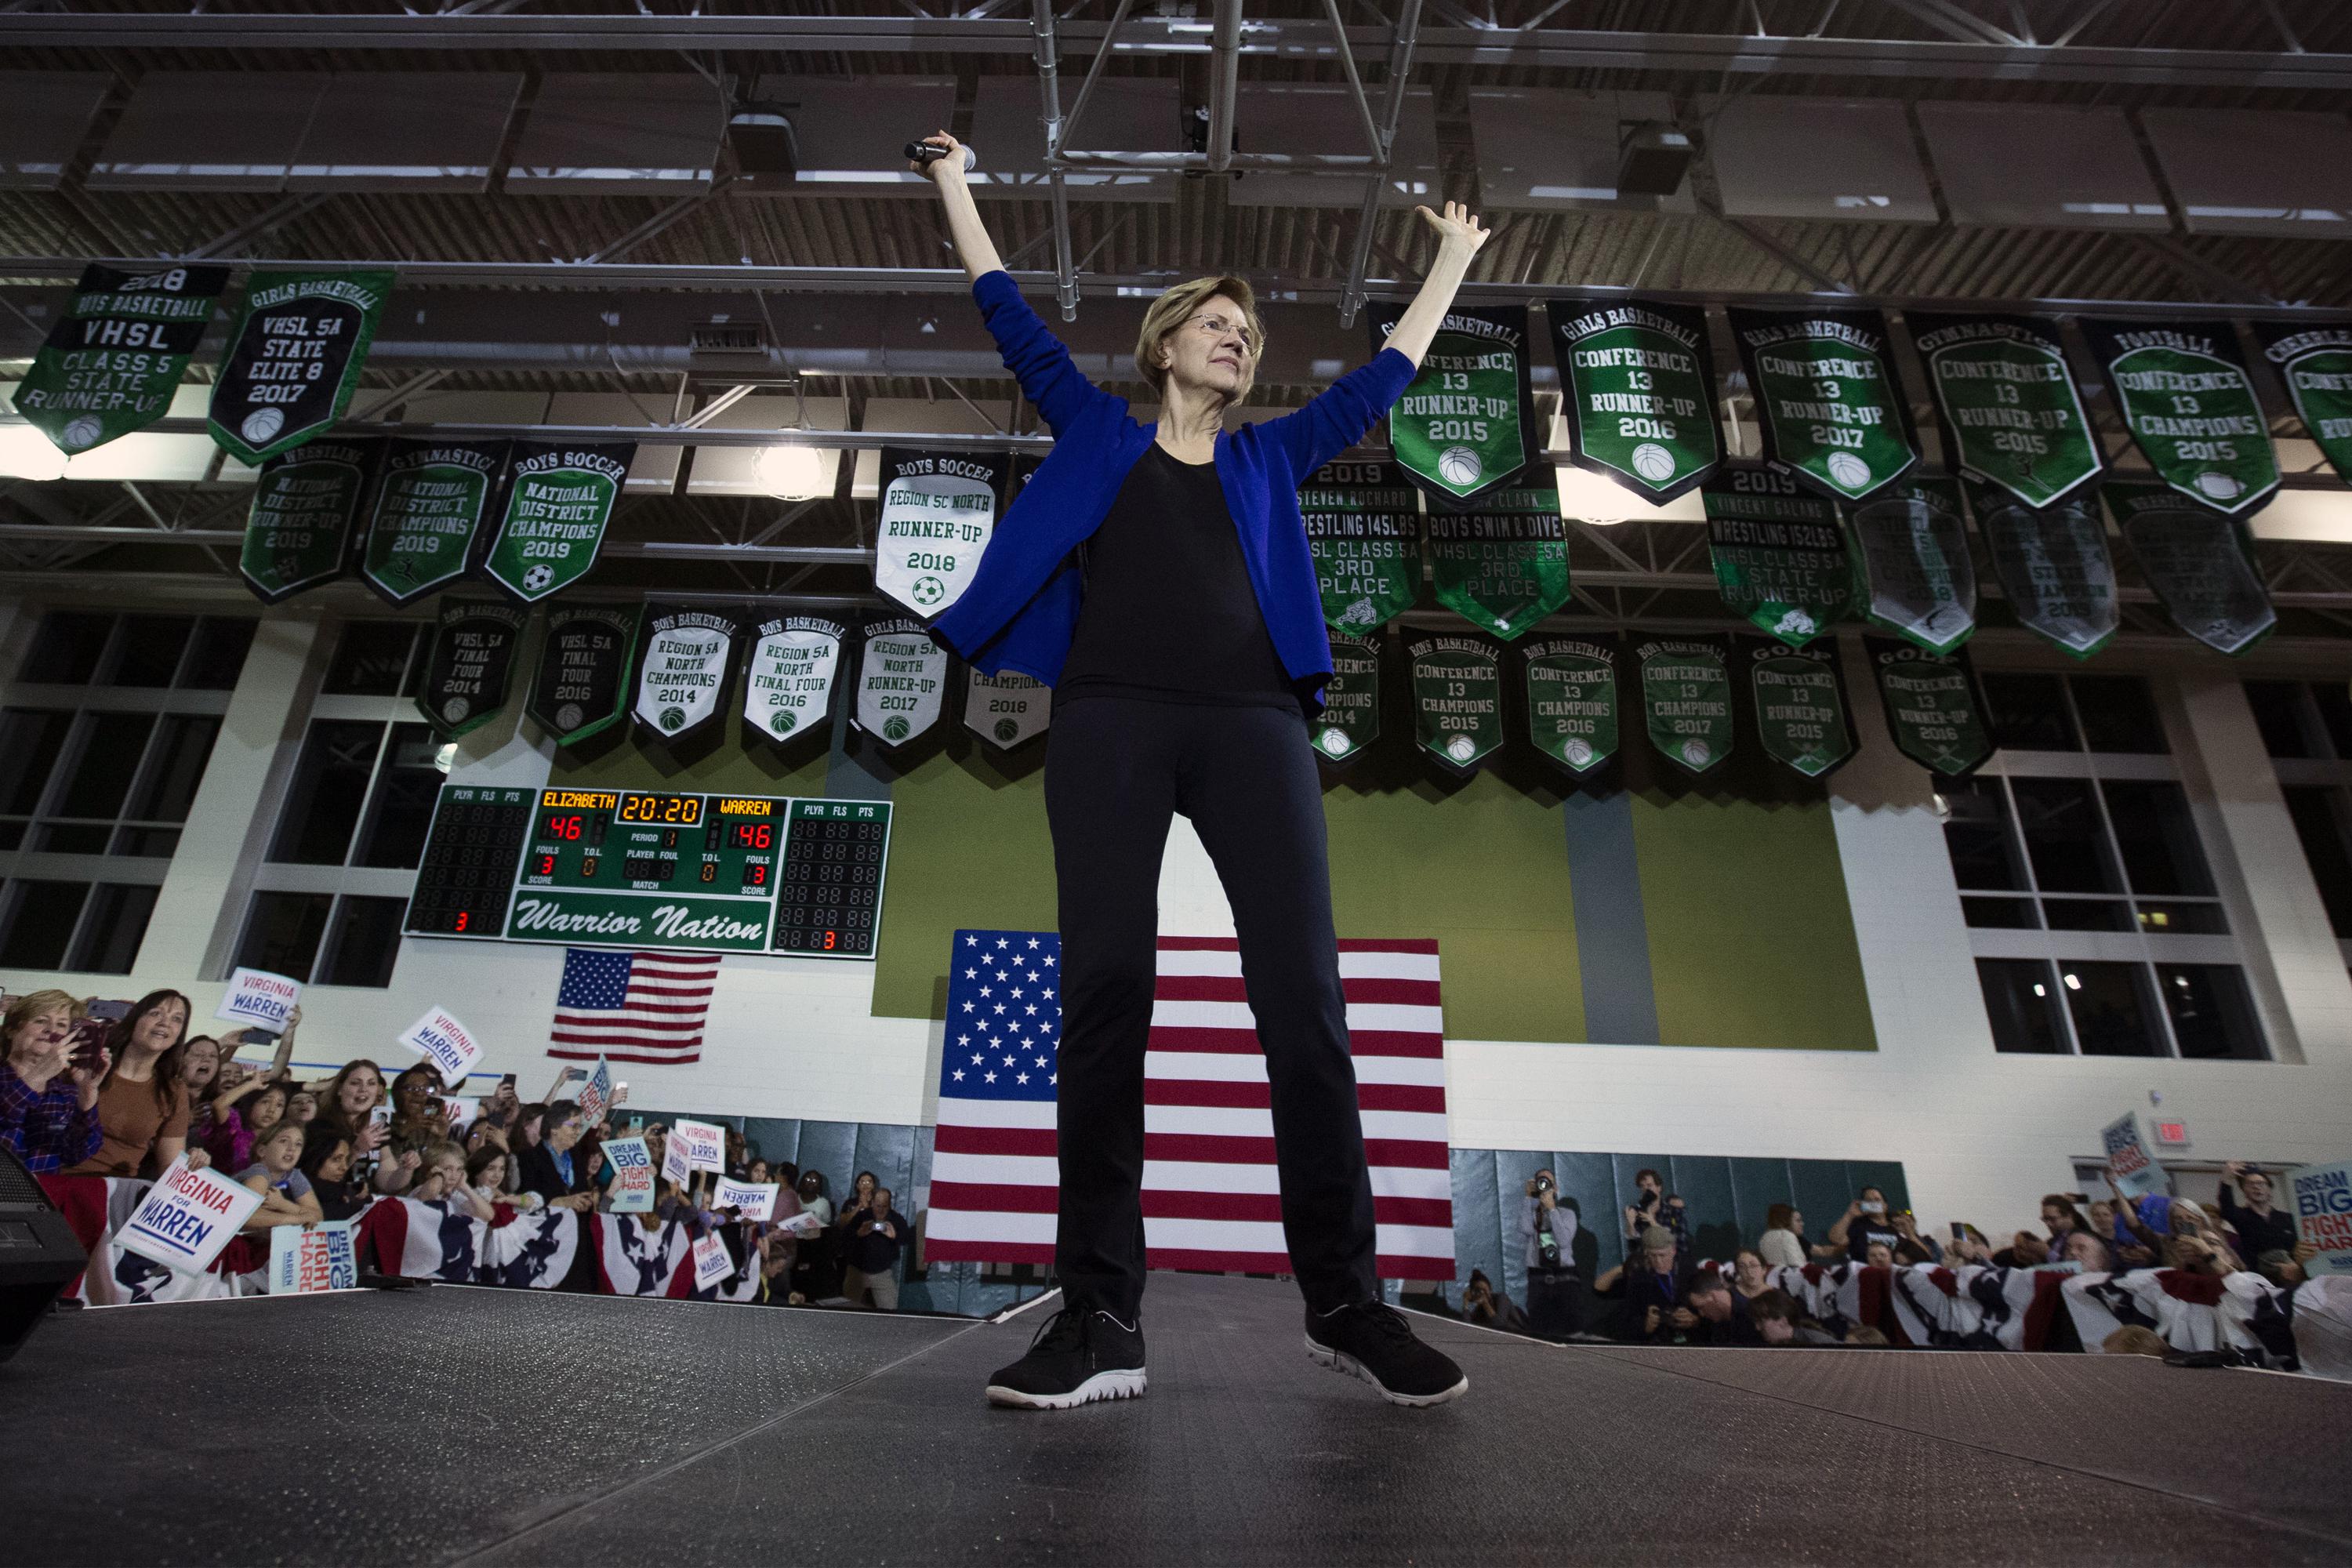 Warren has raised $6M since Iowa, says race is 'wide open'